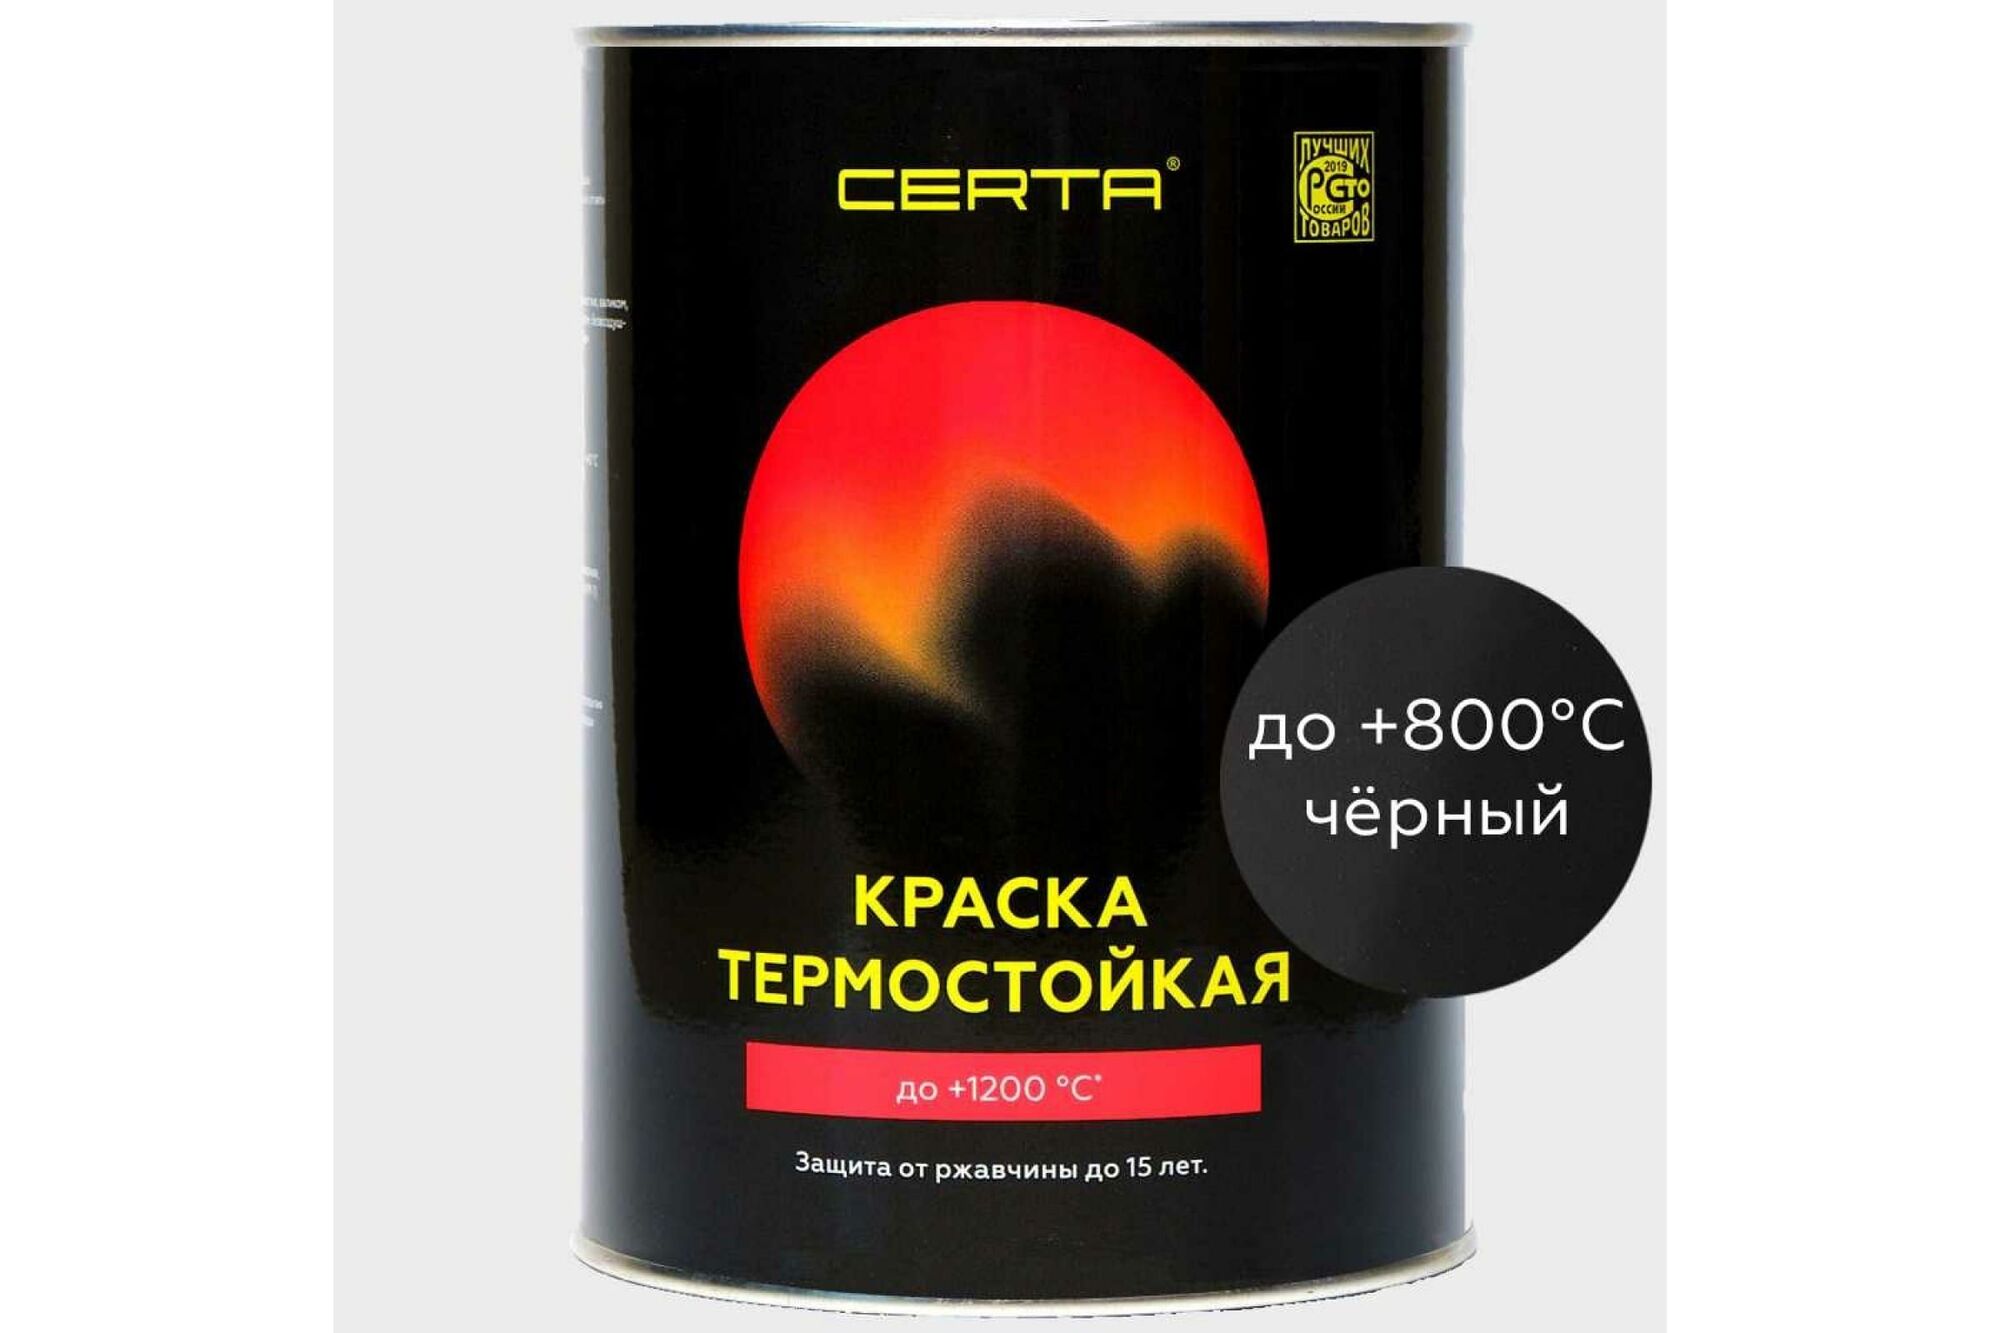 Краска Термостойкая CERTA 0.8 кг черный